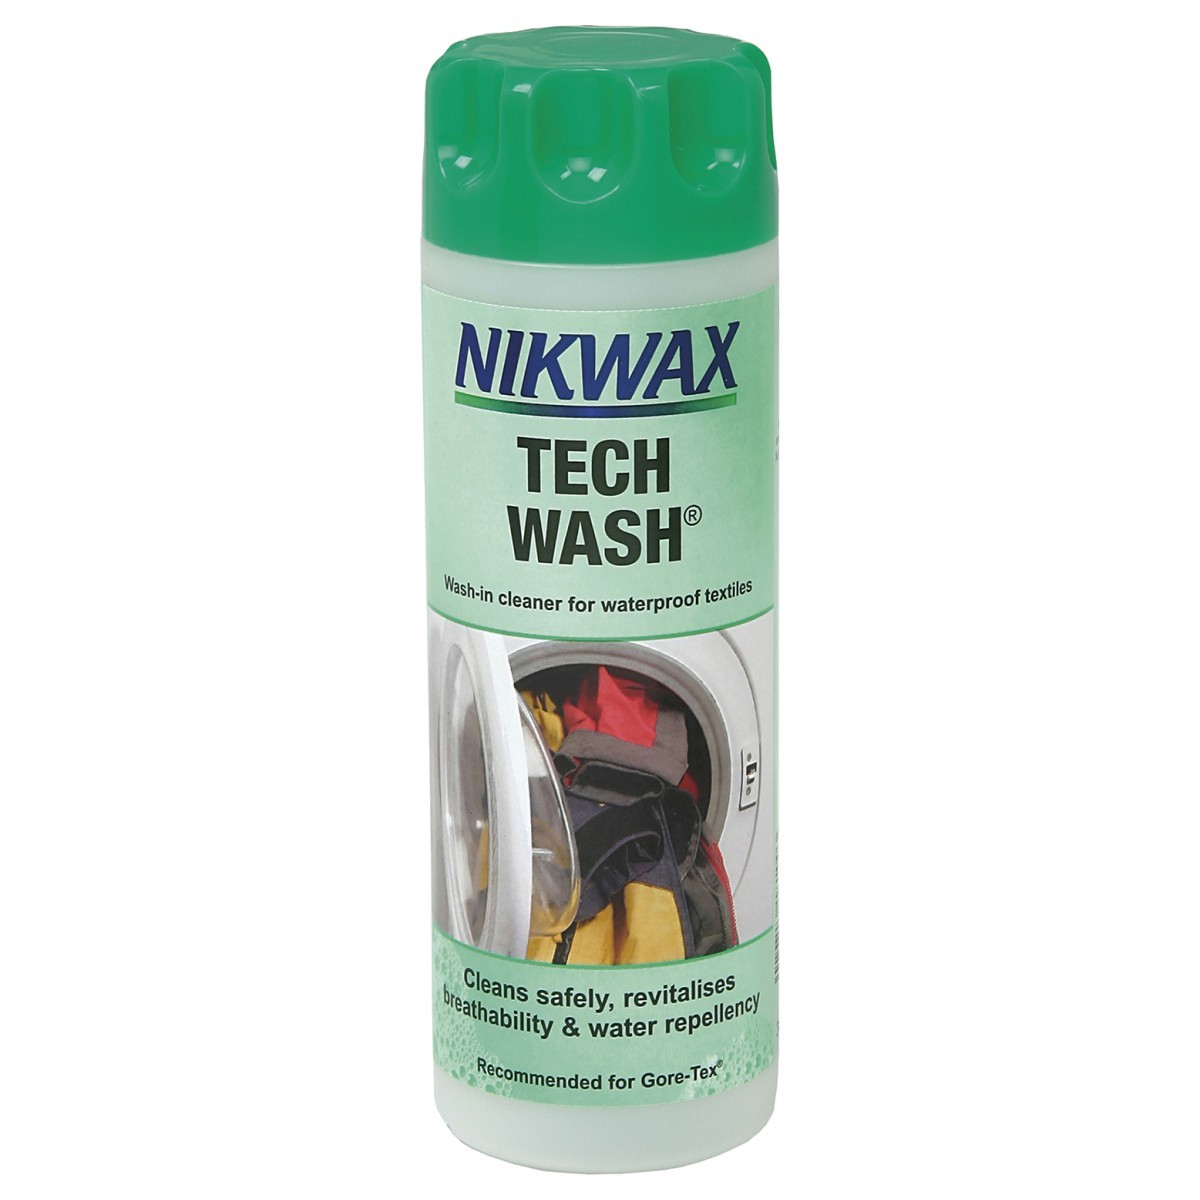 Nikwax Tech Wash TX Direct Wash In 